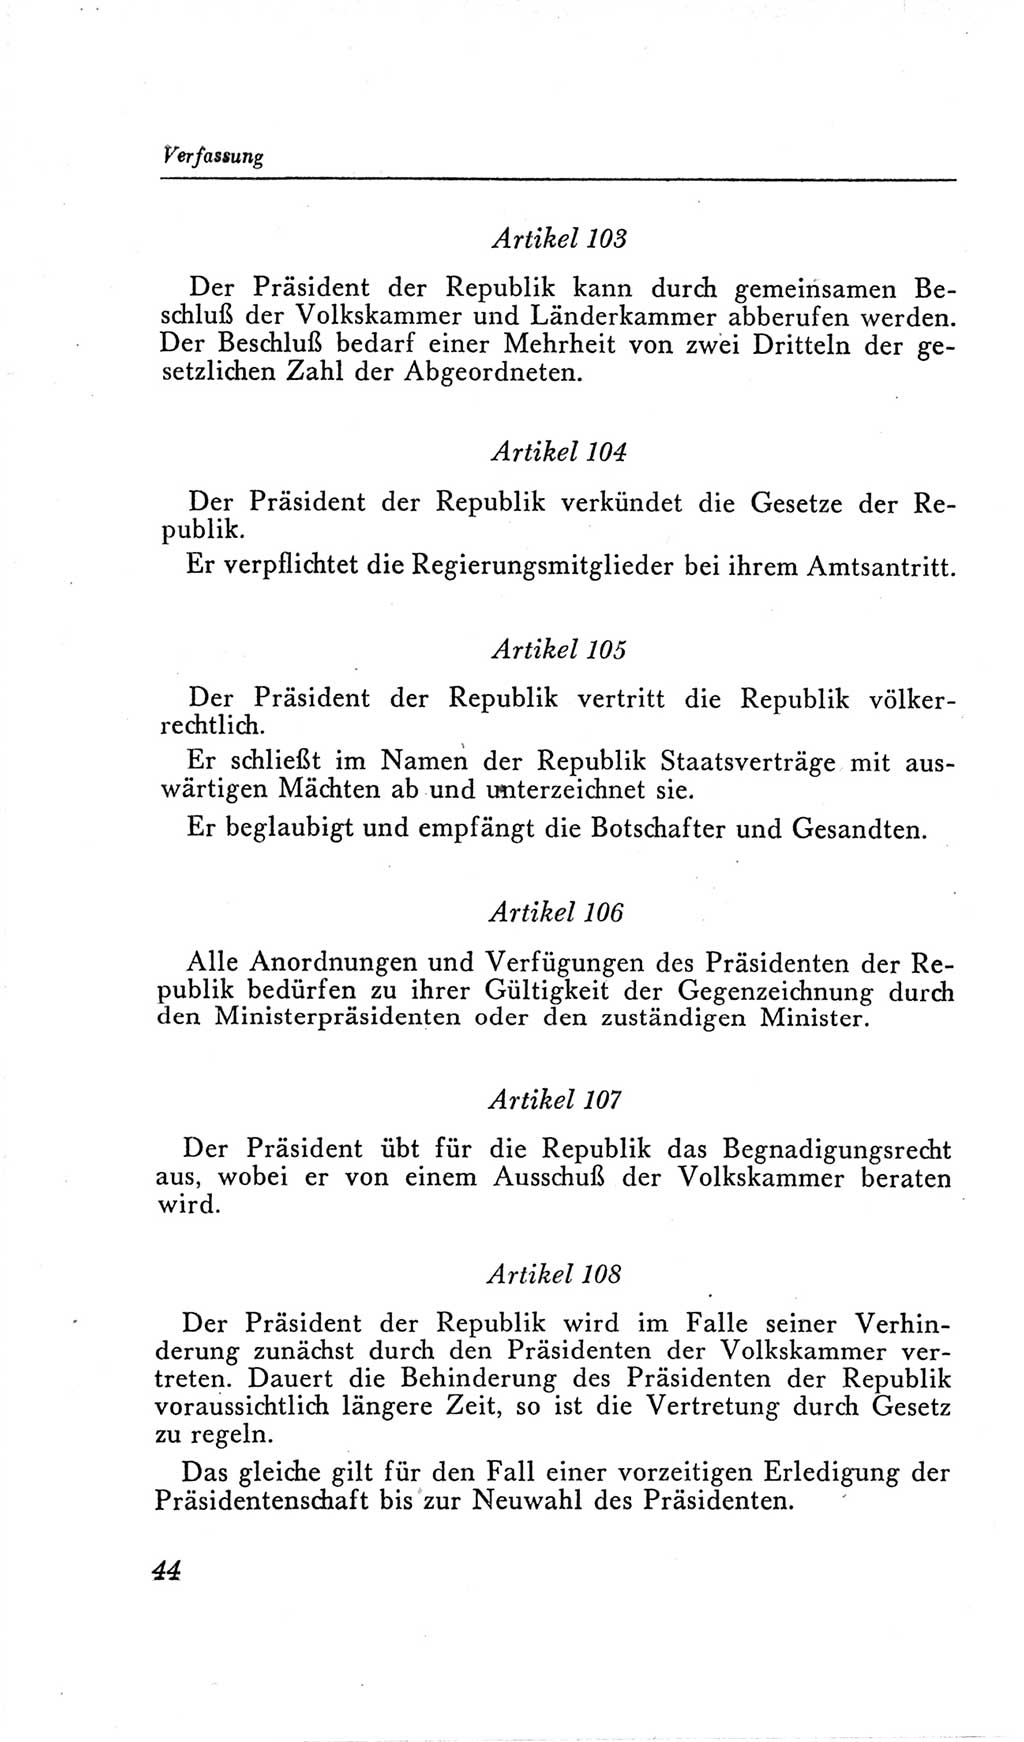 Handbuch der Volkskammer (VK) der Deutschen Demokratischen Republik (DDR), 2. Wahlperiode 1954-1958, Seite 44 (Hdb. VK. DDR, 2. WP. 1954-1958, S. 44)